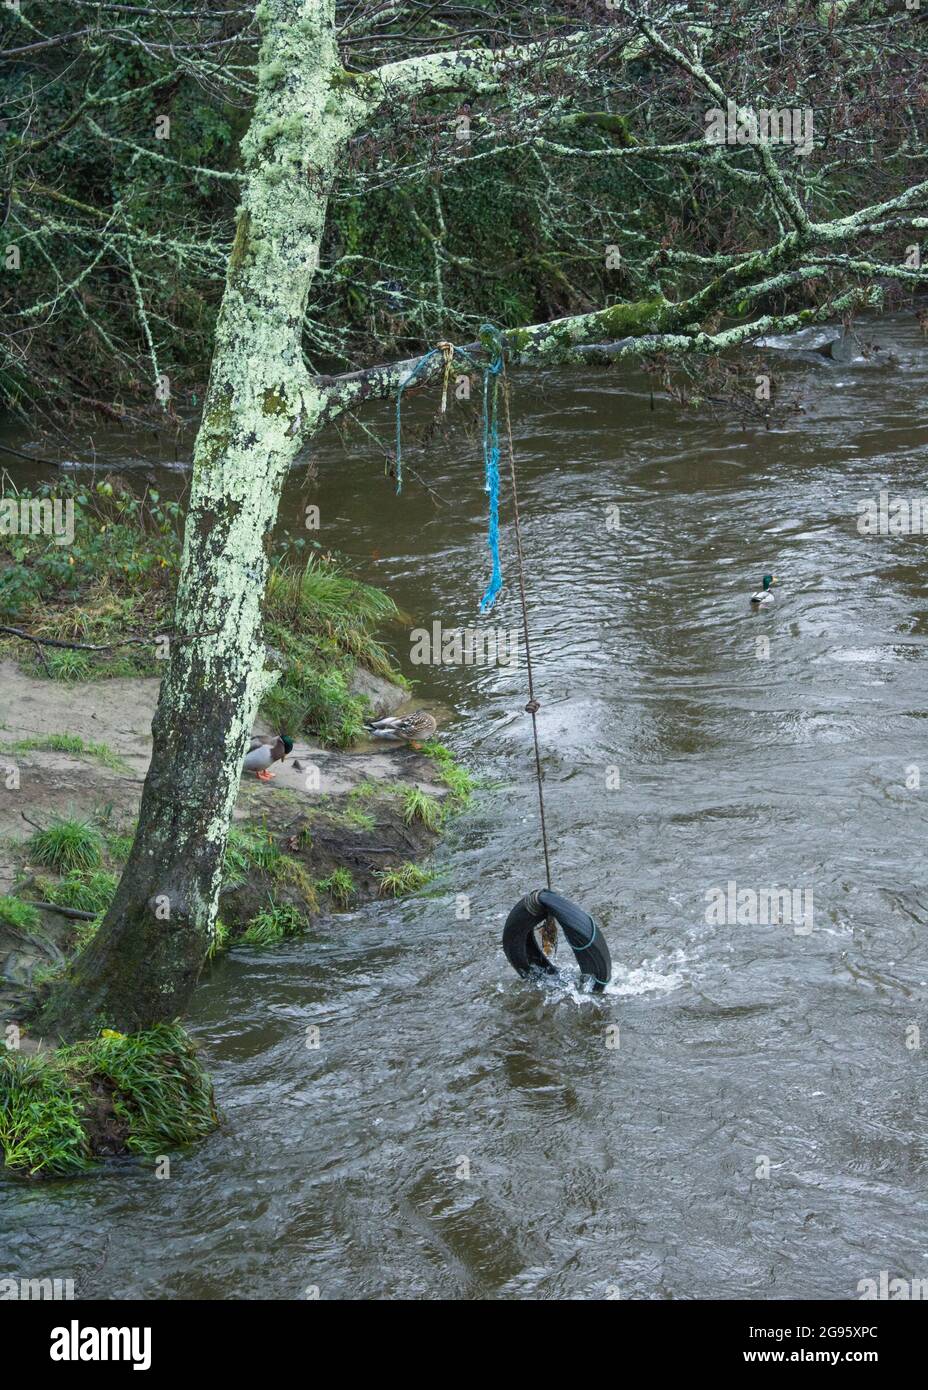 Oscillazione del pneumatico / oscillazione dell'albero appesa da una banca del fiume sopra l'acqua. Metafora bambini a giocare, avventure all'aperto, vacanze scolastiche, fiume allagato. Foto Stock